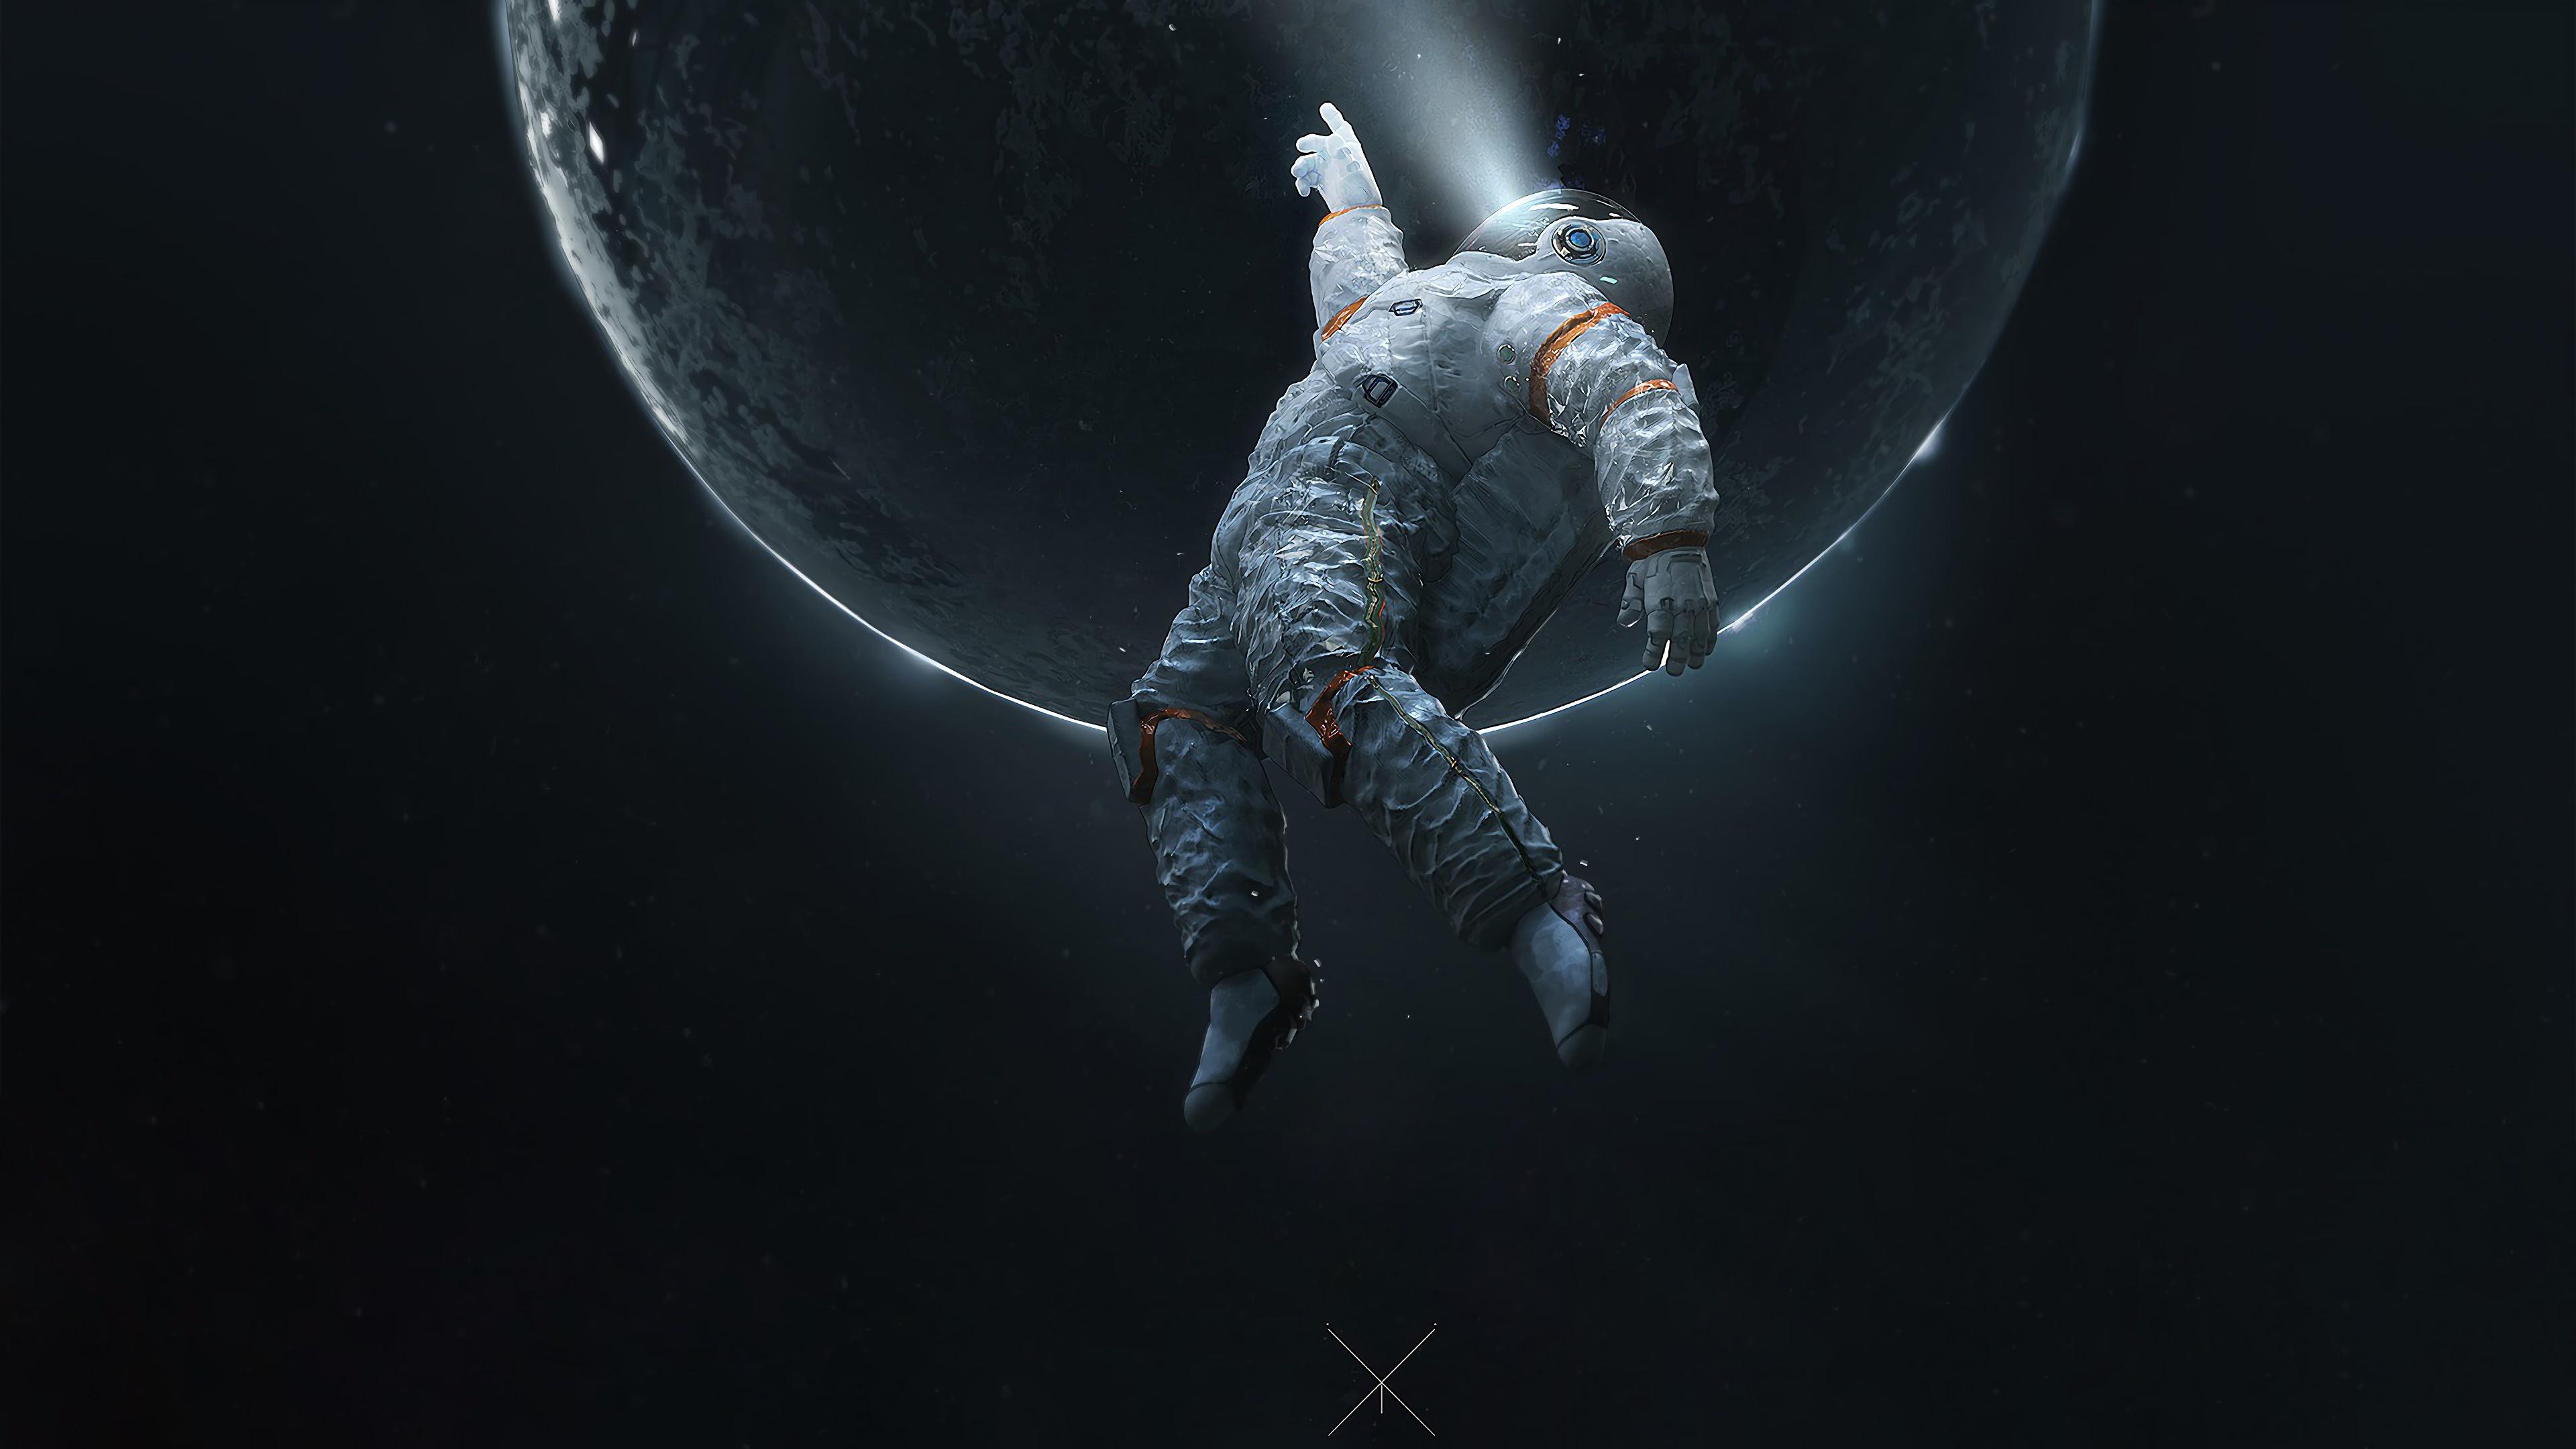 Cool Astronaut Wallpapers HD  PixelsTalkNet